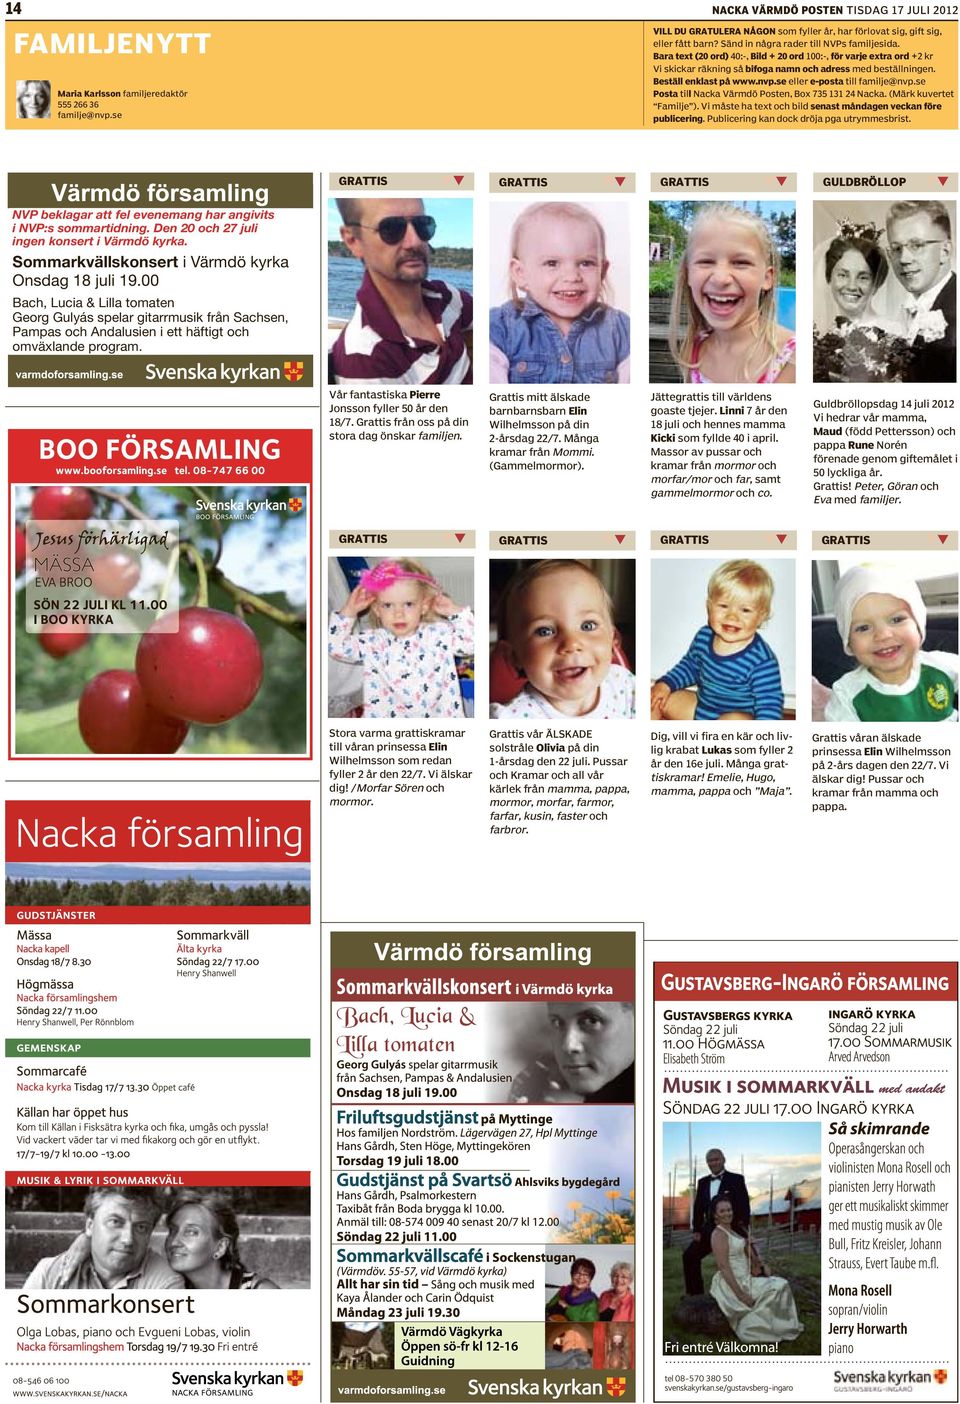 Beställ enklast på www.nvp.se eller e-posta till familje Posta till Nacka Värmdö Posten, Box 735 131 24 Nacka. (Märk kuvertet Familje ).